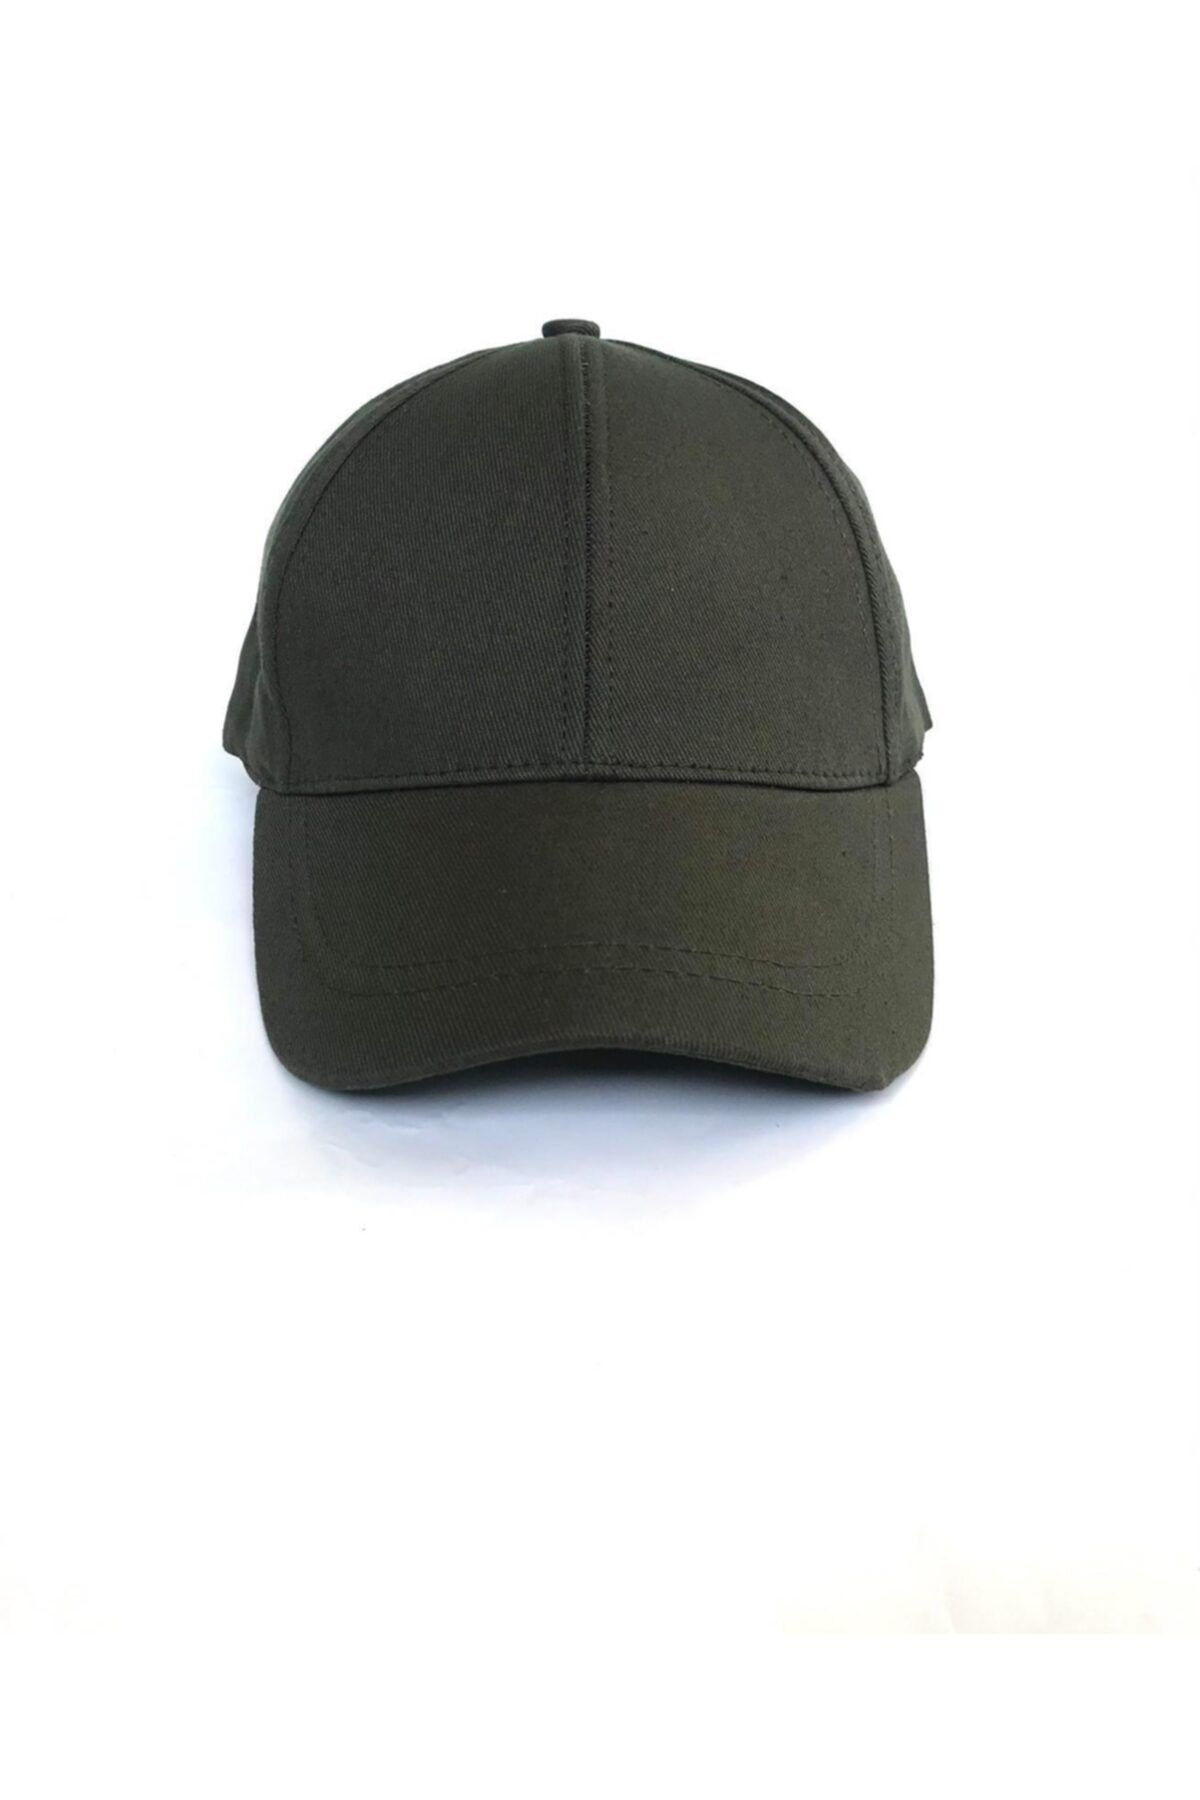 salarticaret Unisex Haki Spor Arkası Cırtlı Ayarlanabilir Şapka